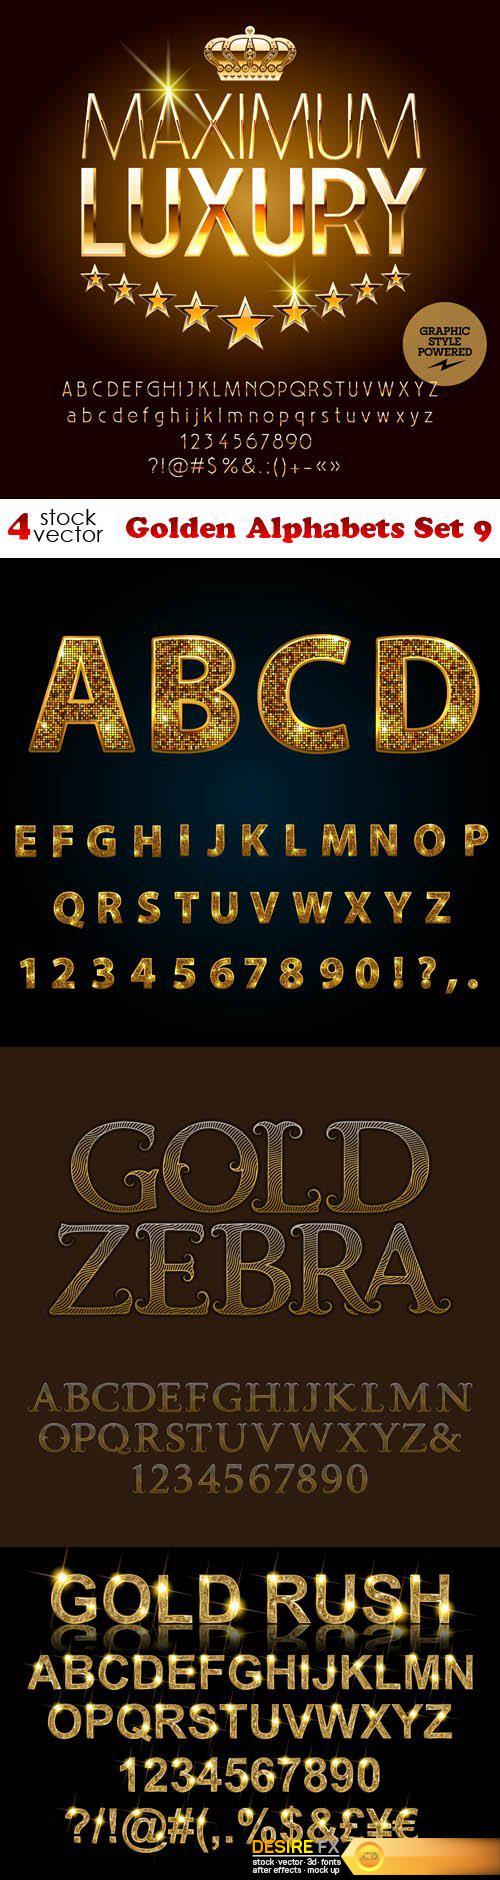 Vectors - Golden Alphabets Set 9